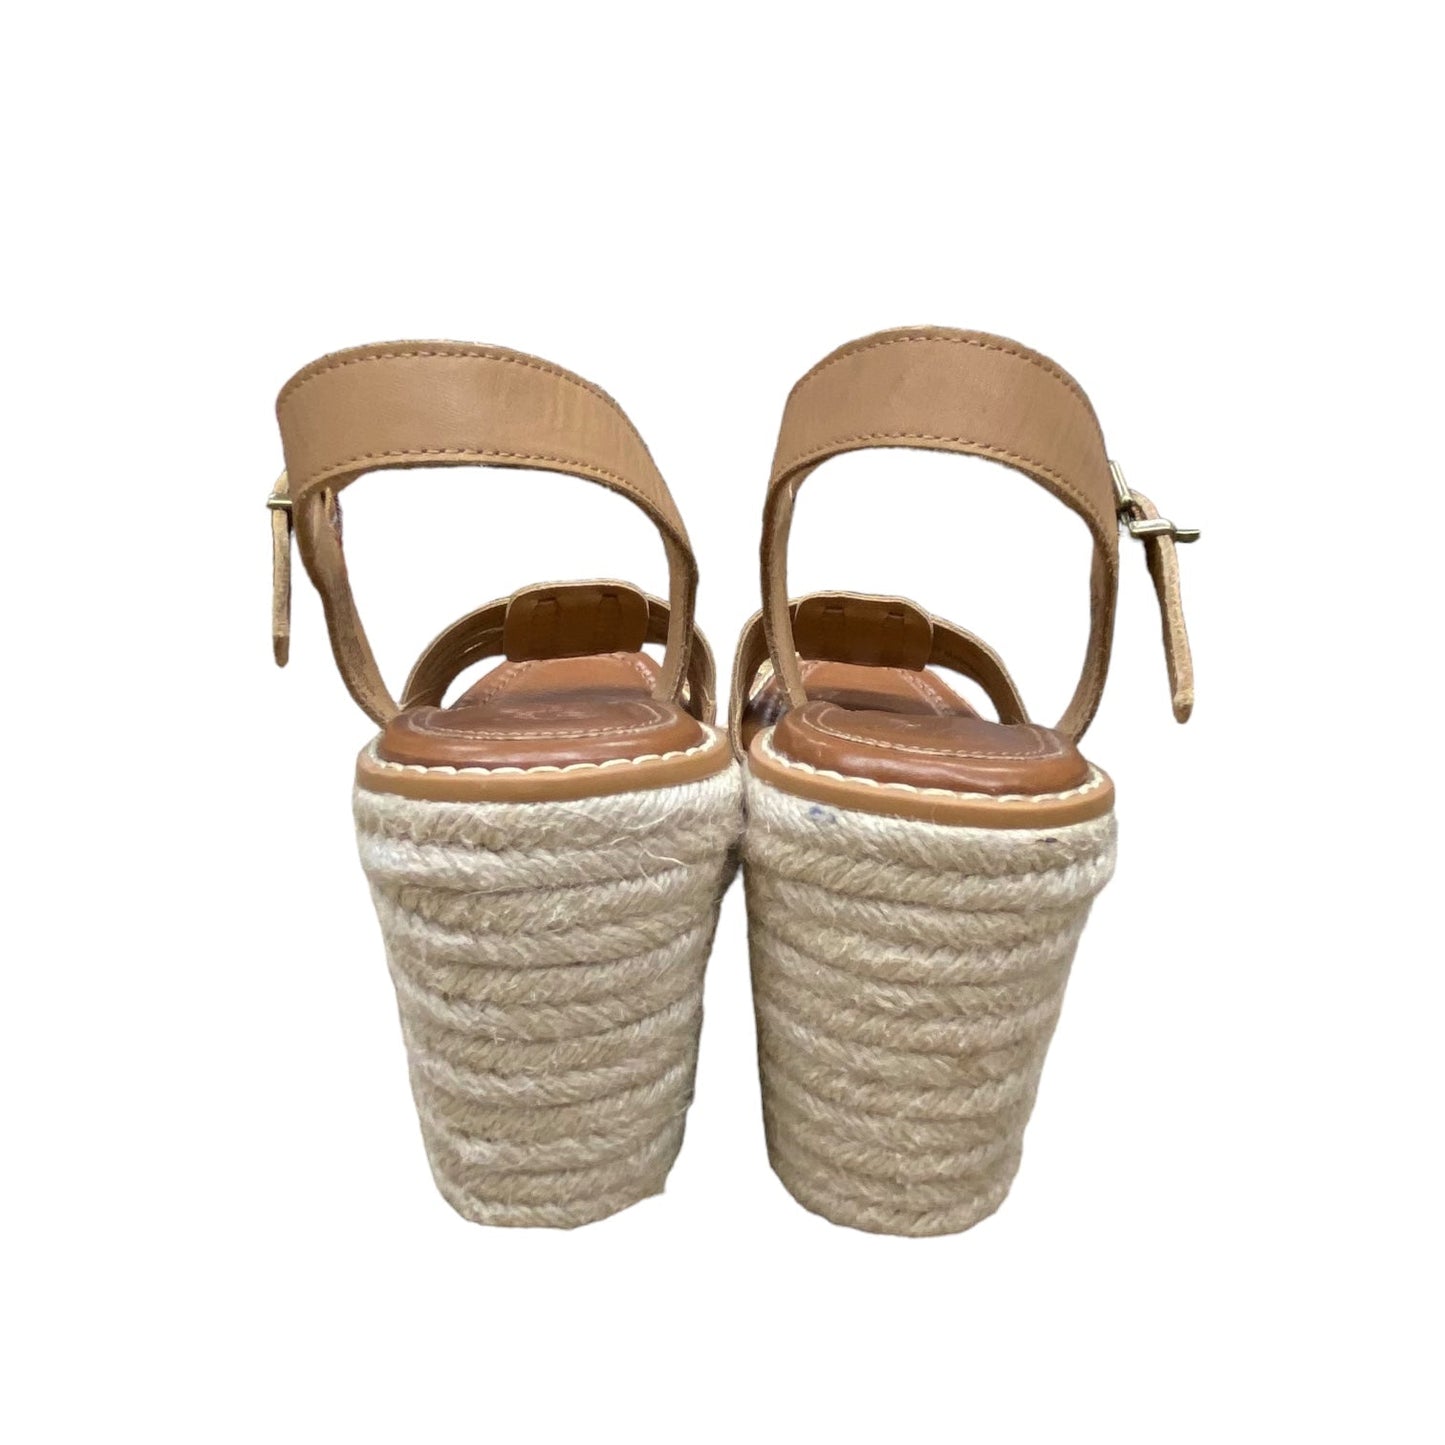 Sandals Heels Wedge By Crown Vintage  Size: 8